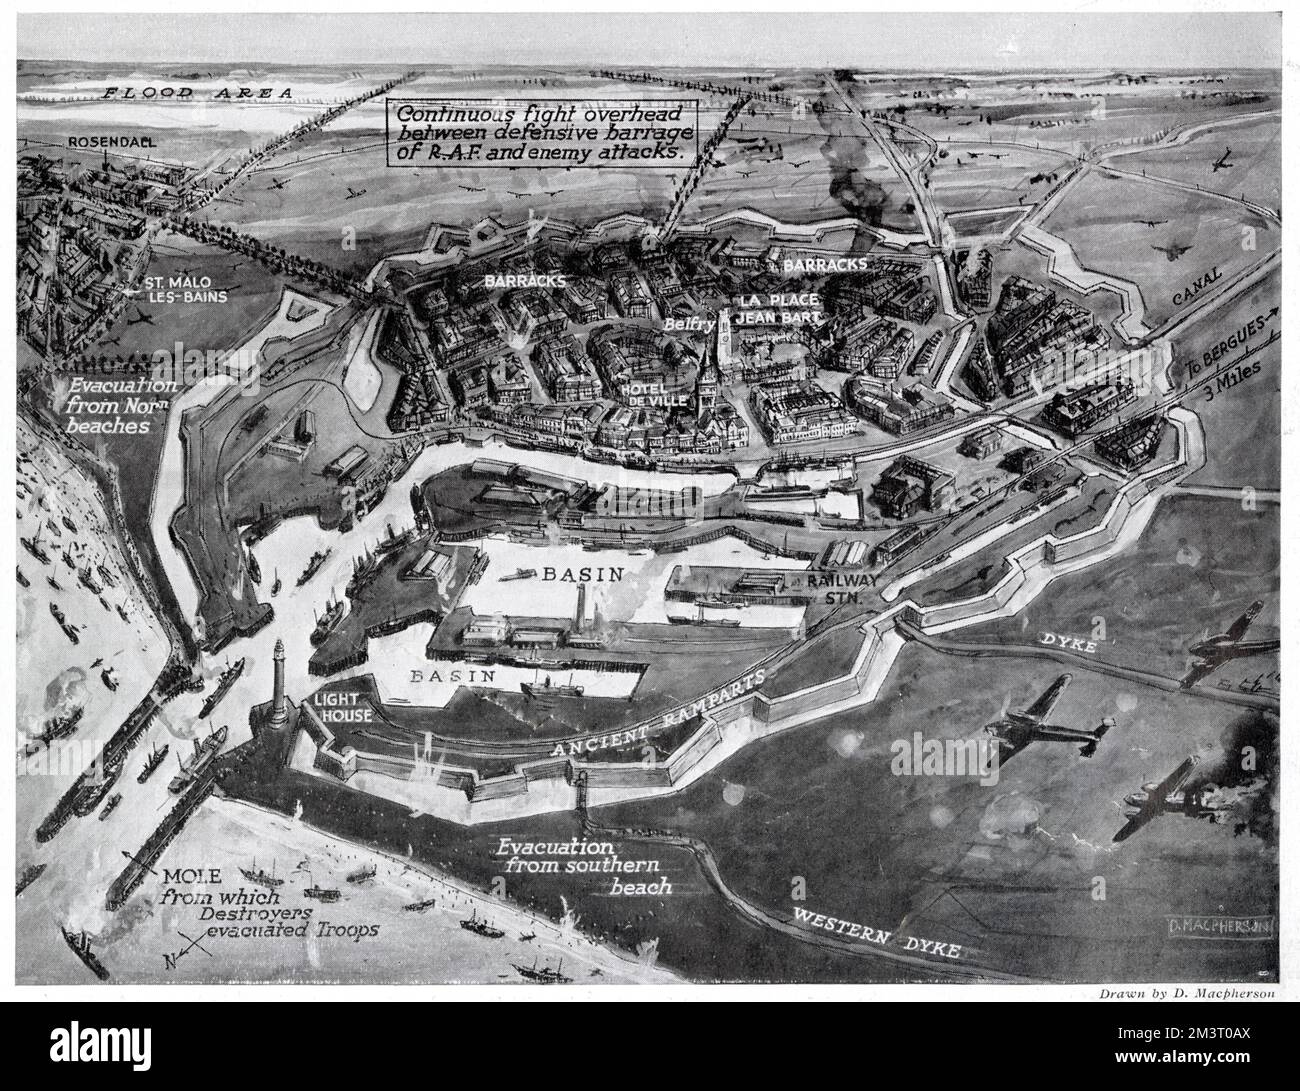 Luftaufnahme von Dünkirchen und Hafen während der Evakuierung mit umliegender Landschaft. Datum: 1940 Stockfoto